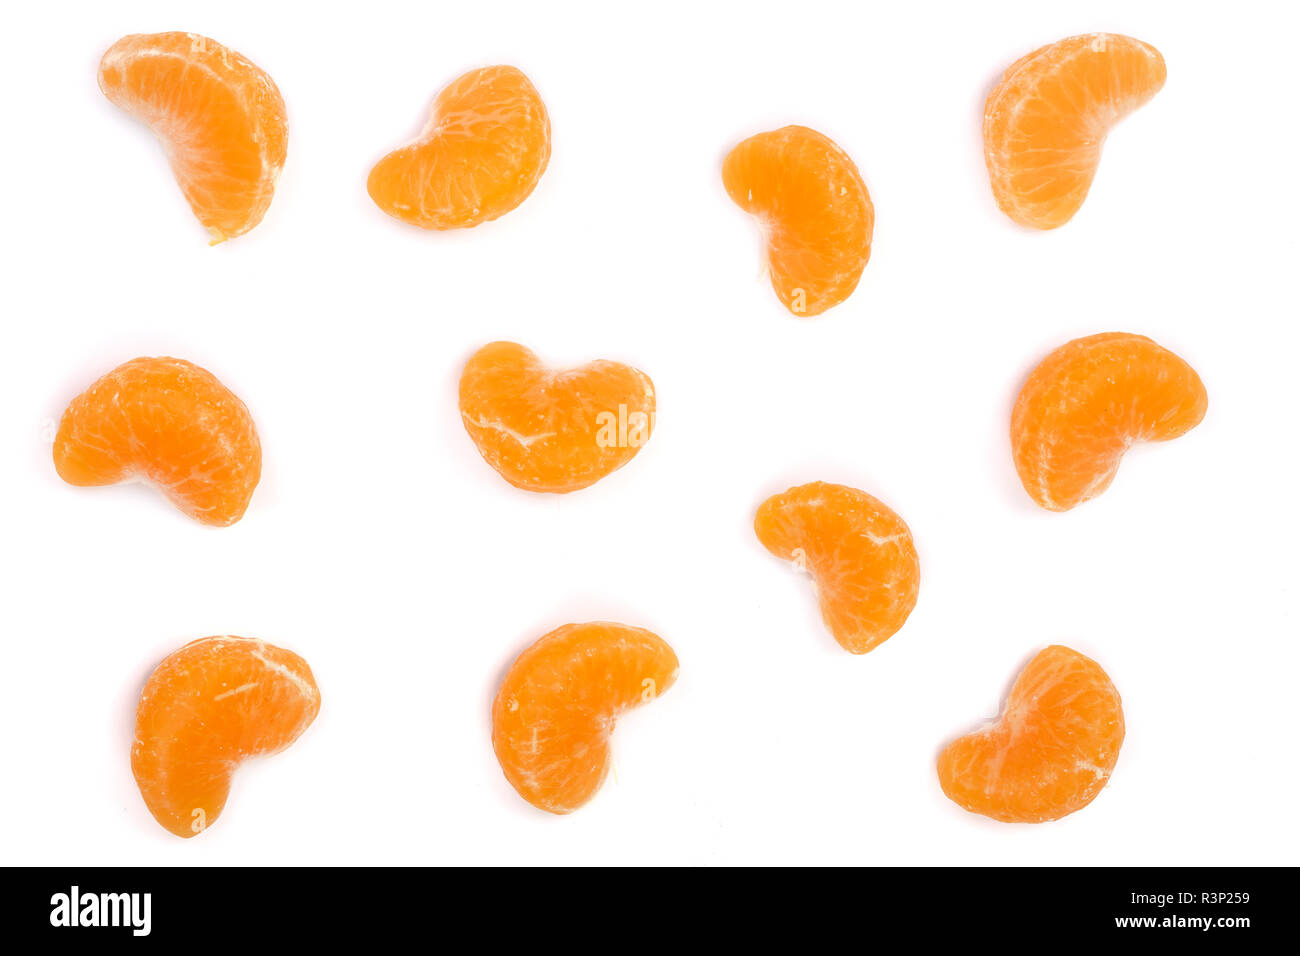 Tranches de mandarine mandarine ou avec des feuilles isolées sur fond blanc. Mise à plat, vue du dessus. Composition de fruits Banque D'Images